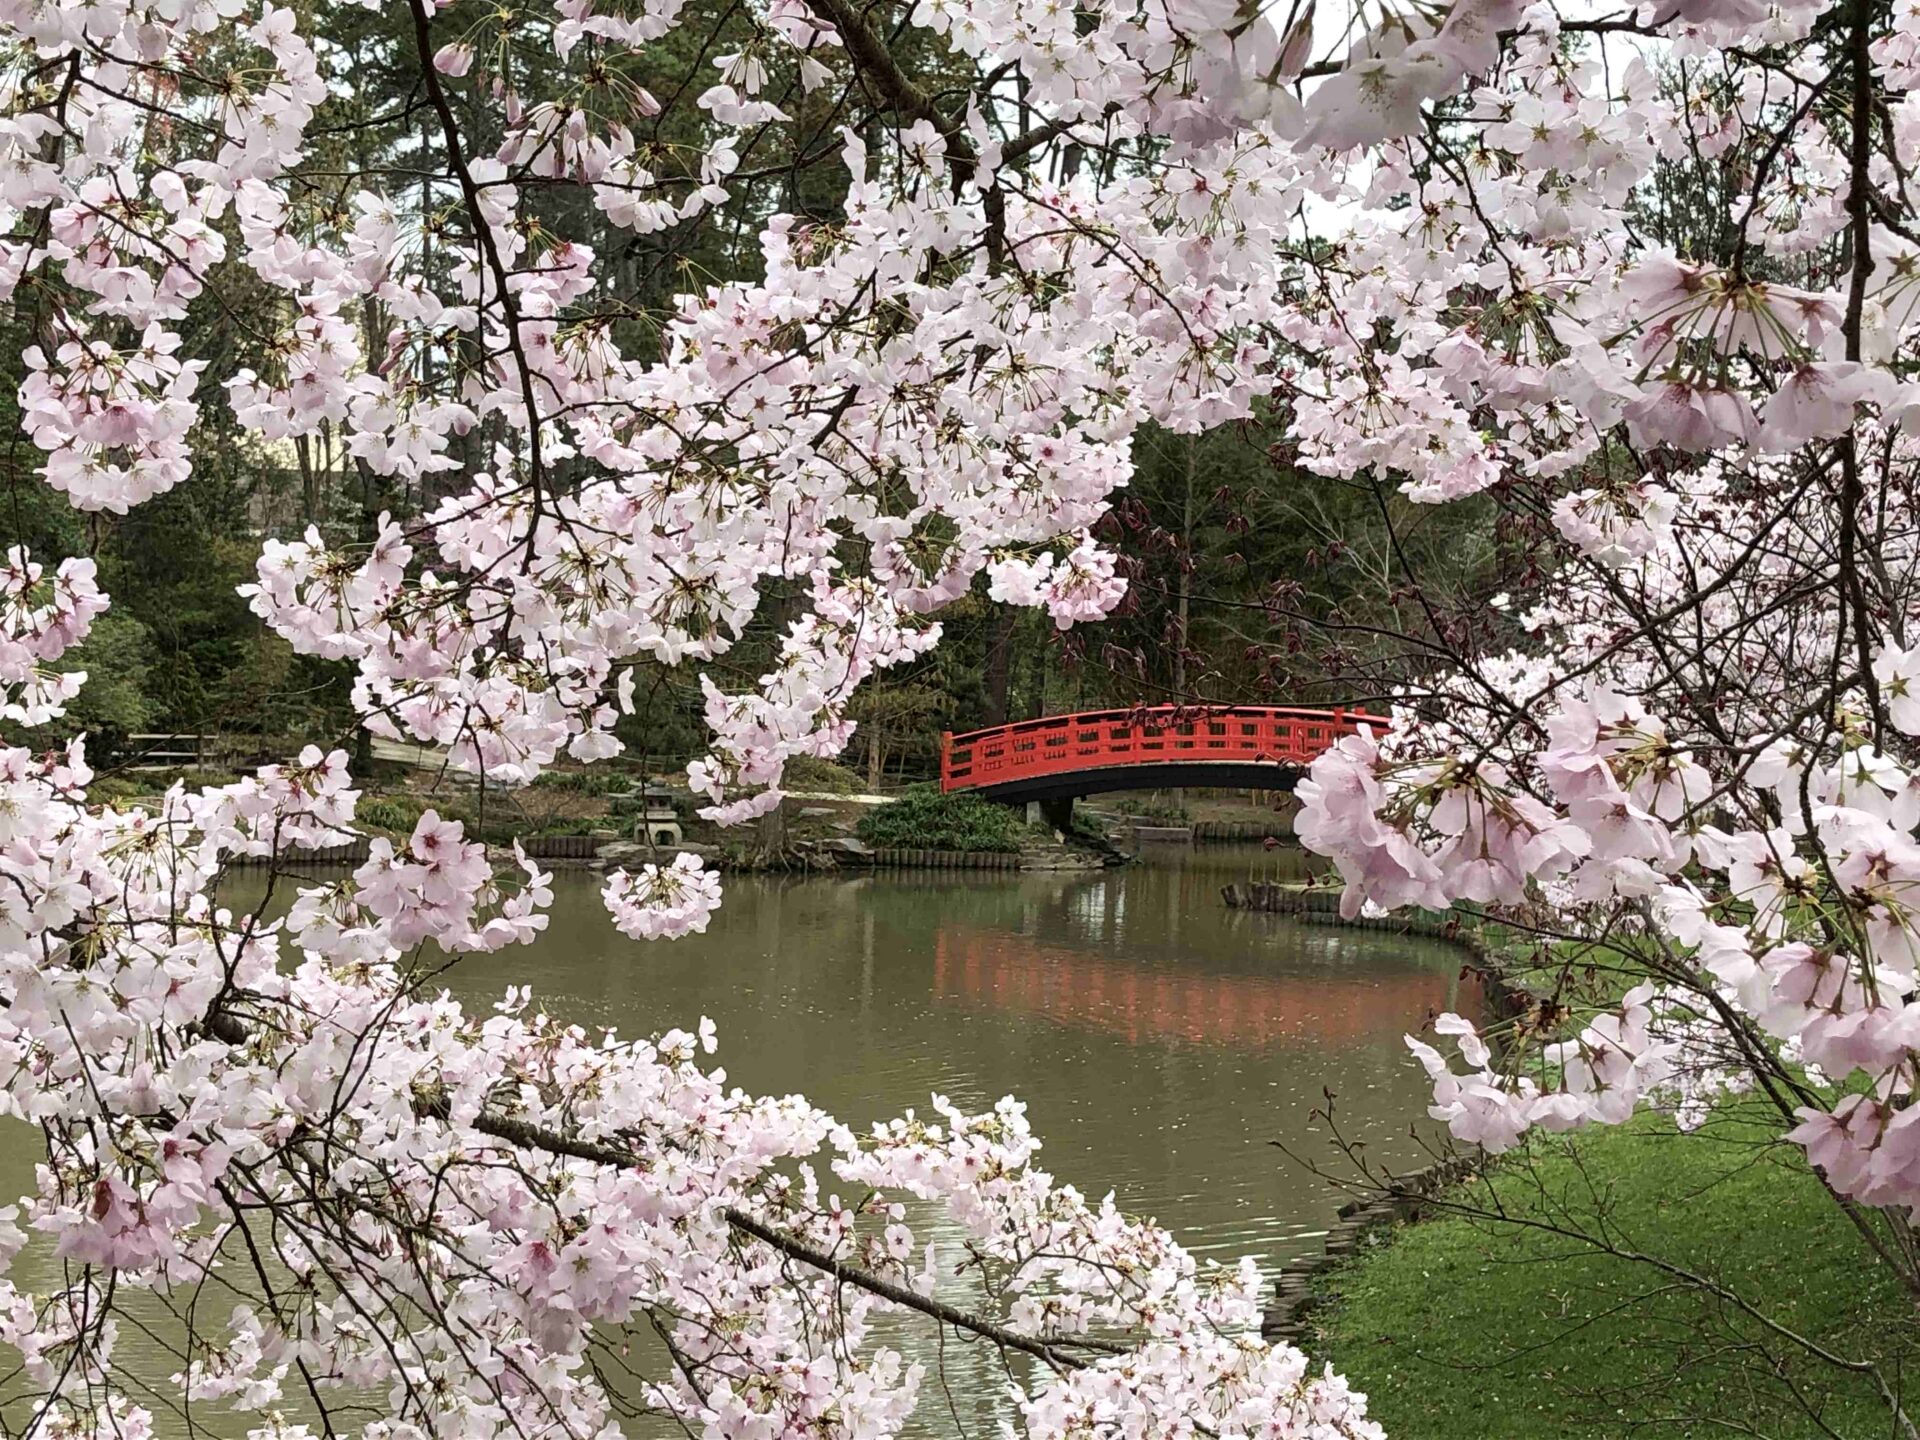 Japanese Bridge, Sarah P. Duke Gardens, Duke University